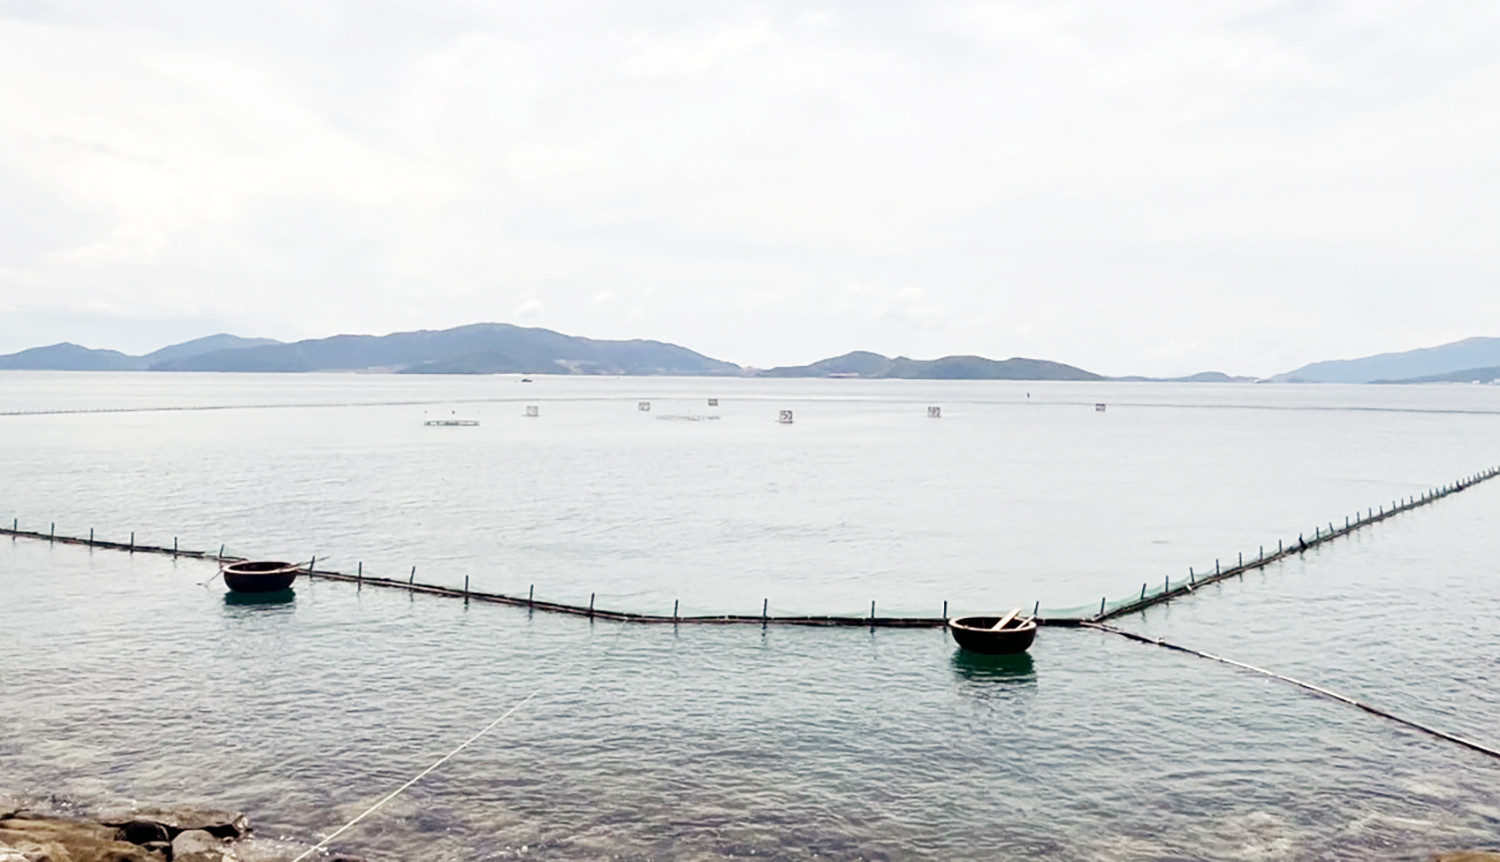 Giàn phao nổi chiếm mặt biển vịnh Nha Trang cùng nhà hàng vi phạm bị xử lý